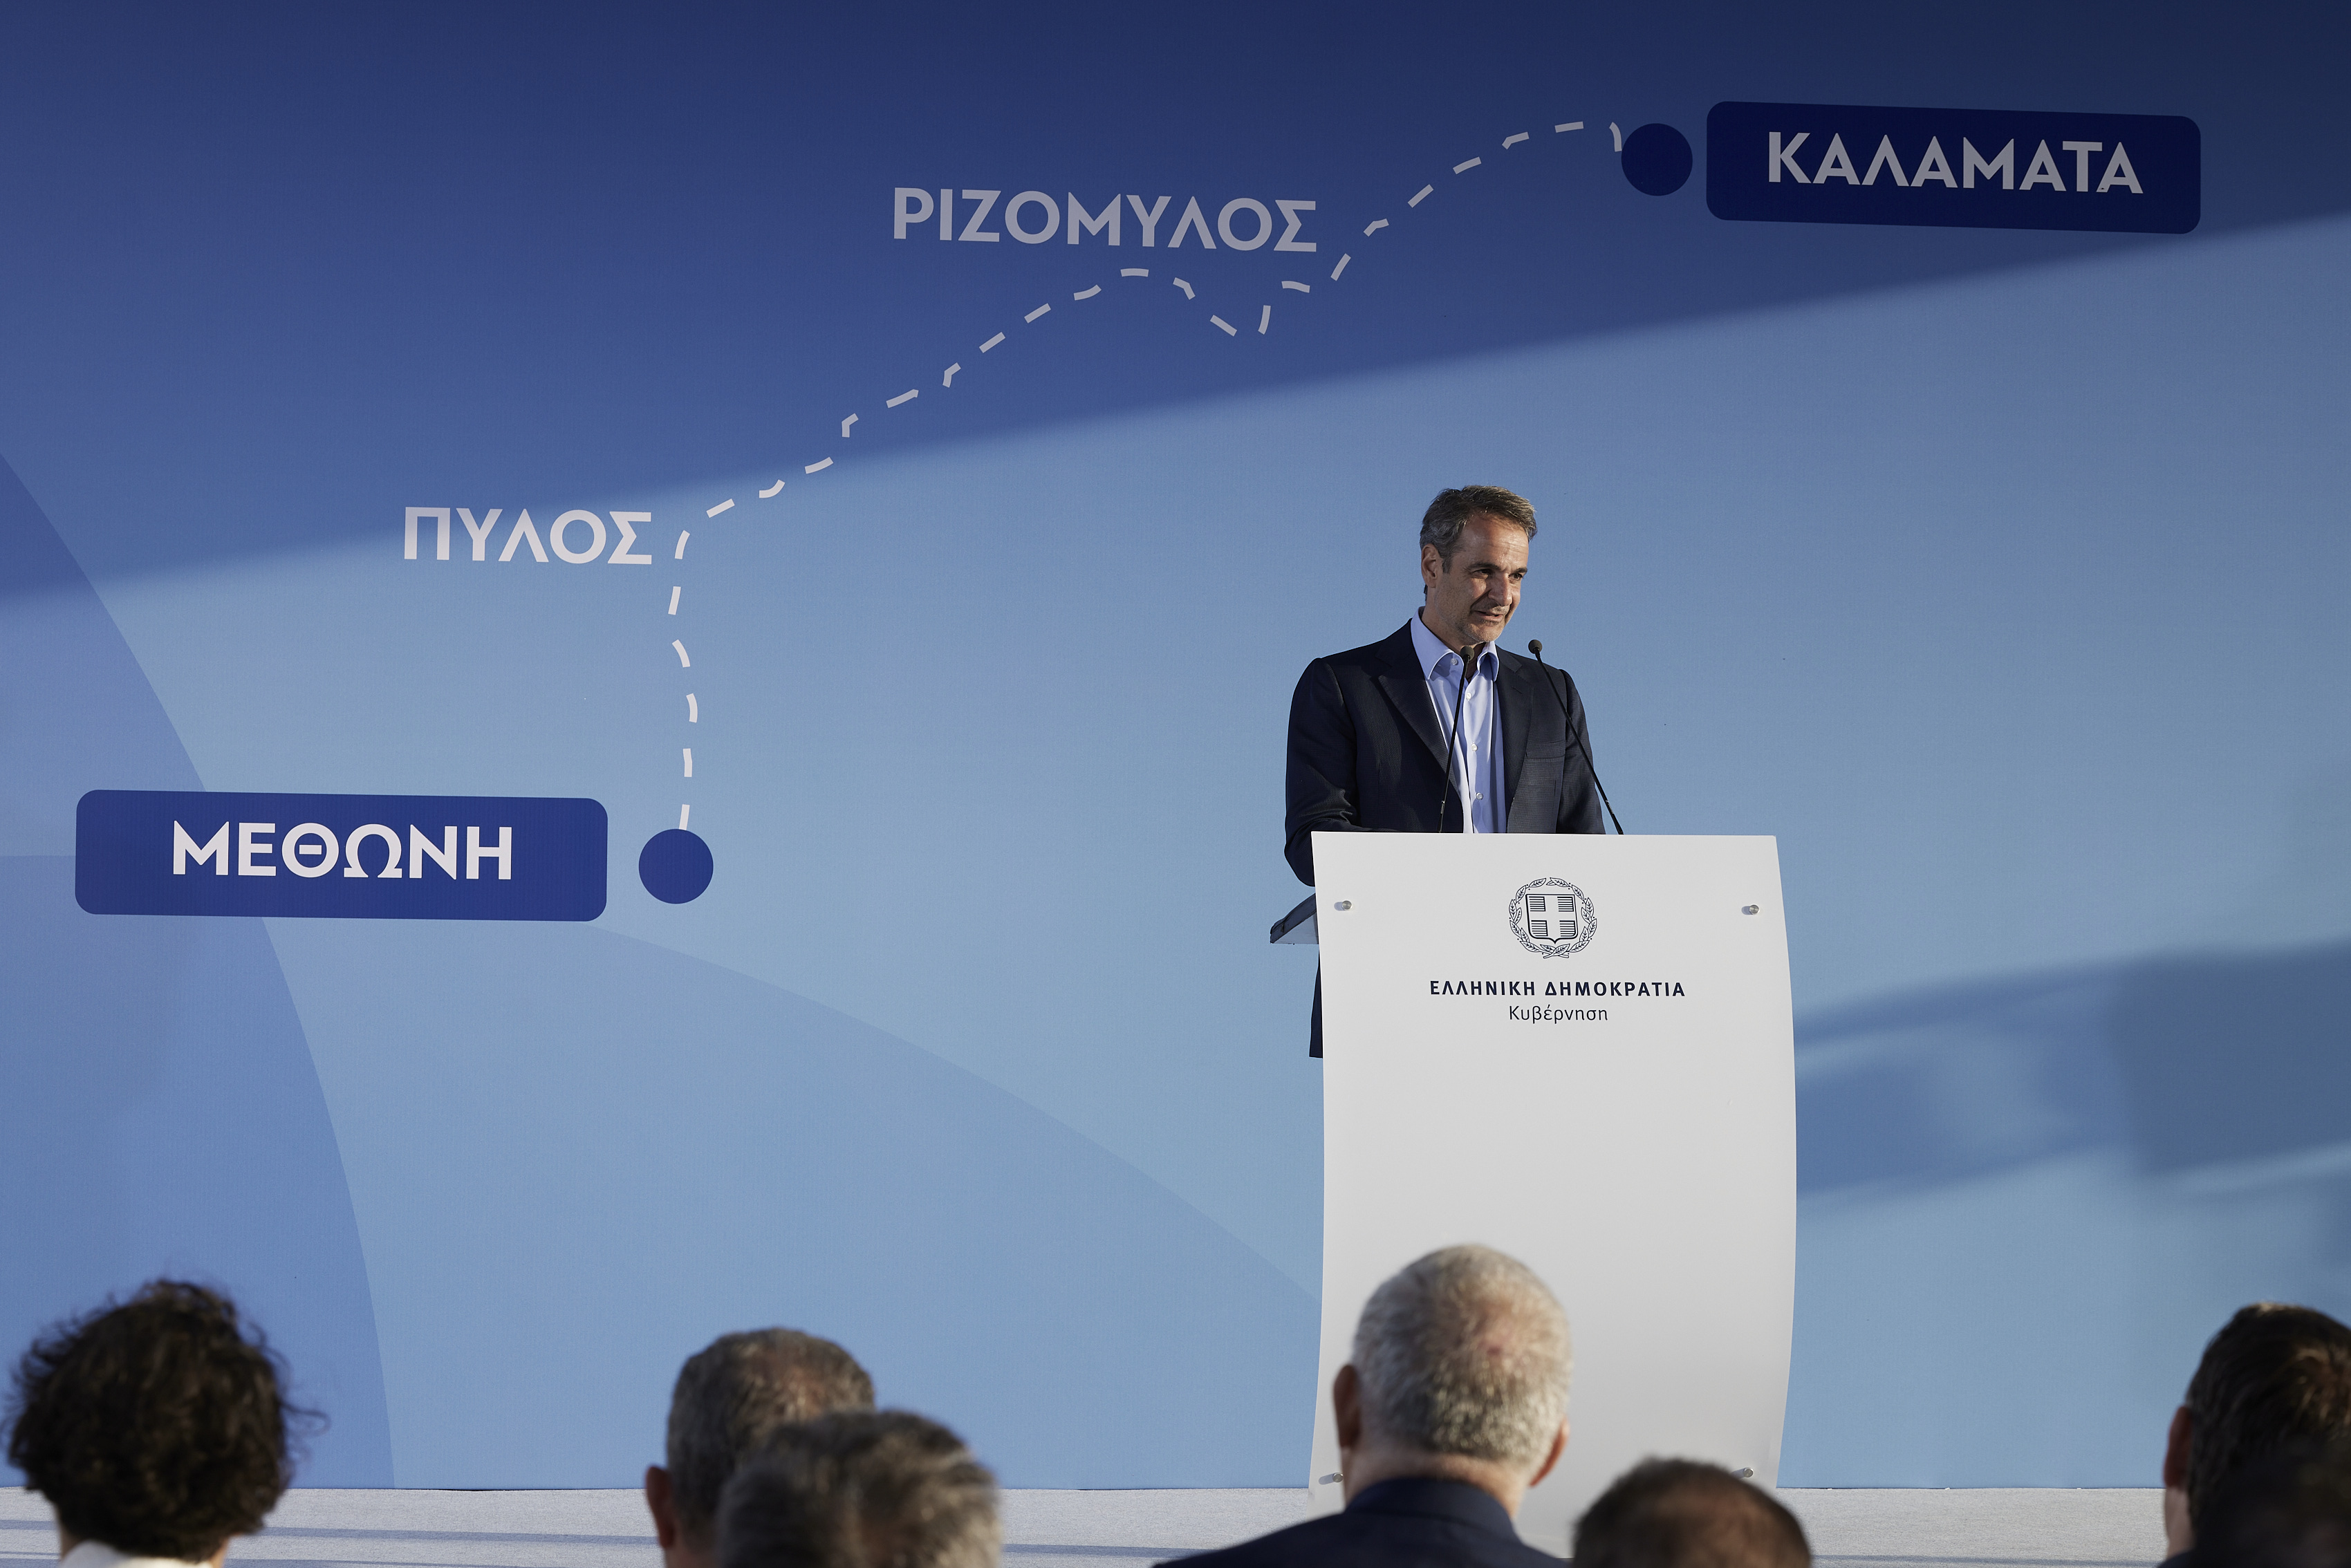 Μητσοτάκης: Ο ΣΥΡΙΖΑ θα μας πάει ξανά σε μνημόνια – Οι πολίτες δεν θα πιστέψουν το παραμύθι